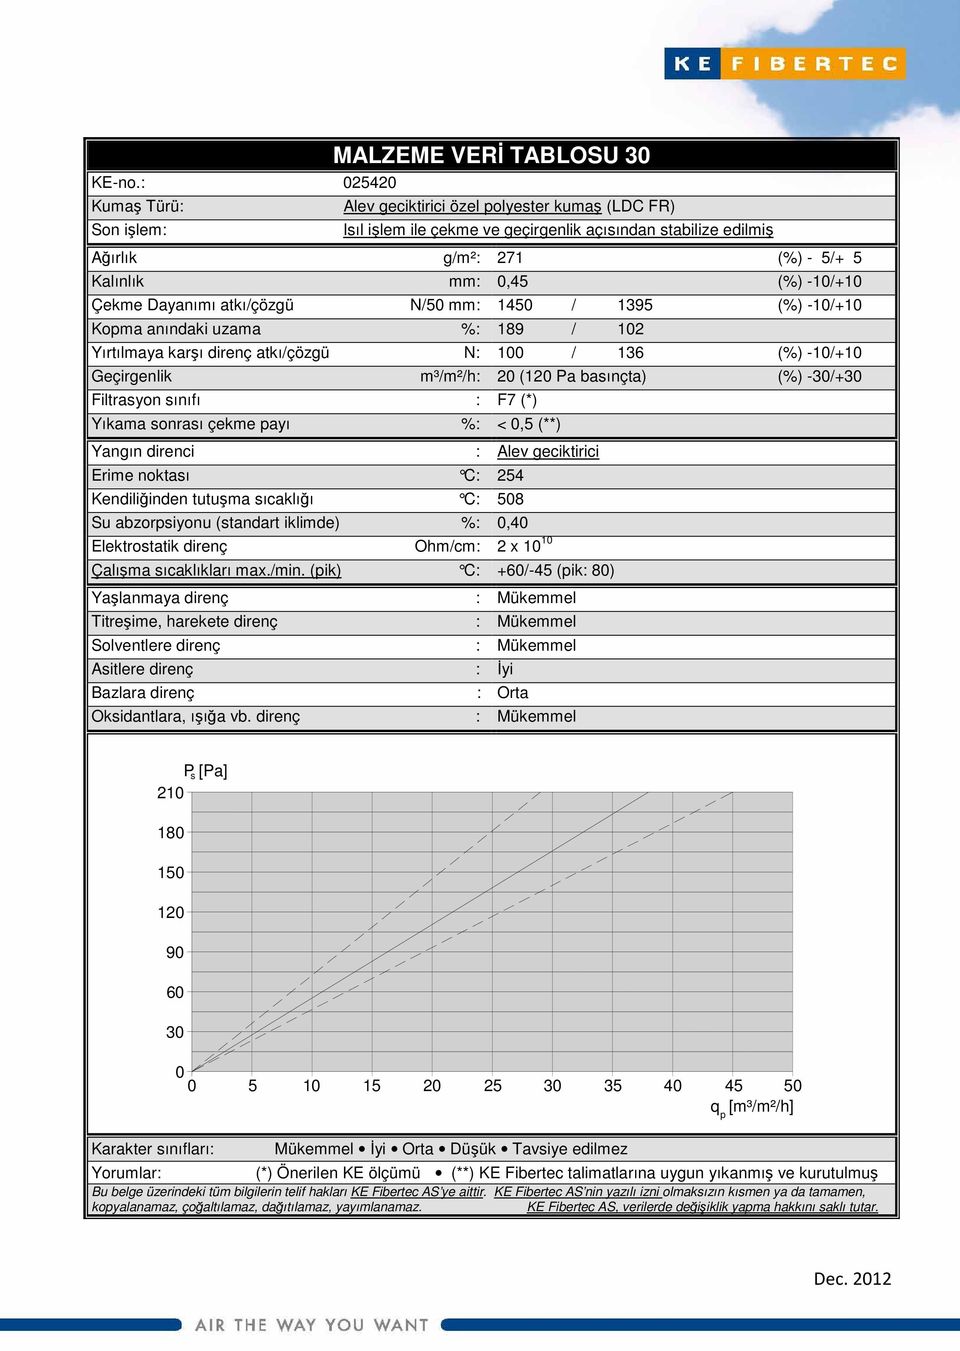 atkı/çözgü N/5 mm: 145 / 1395 (%) -1/+1 Koma anındaki uzama %: 189 / 12 Yırtılmaya karşı direnç atkı/çözgü N: 1 / 136 (%) -1/+1 Geçirgenlik m³/m²/h: 2